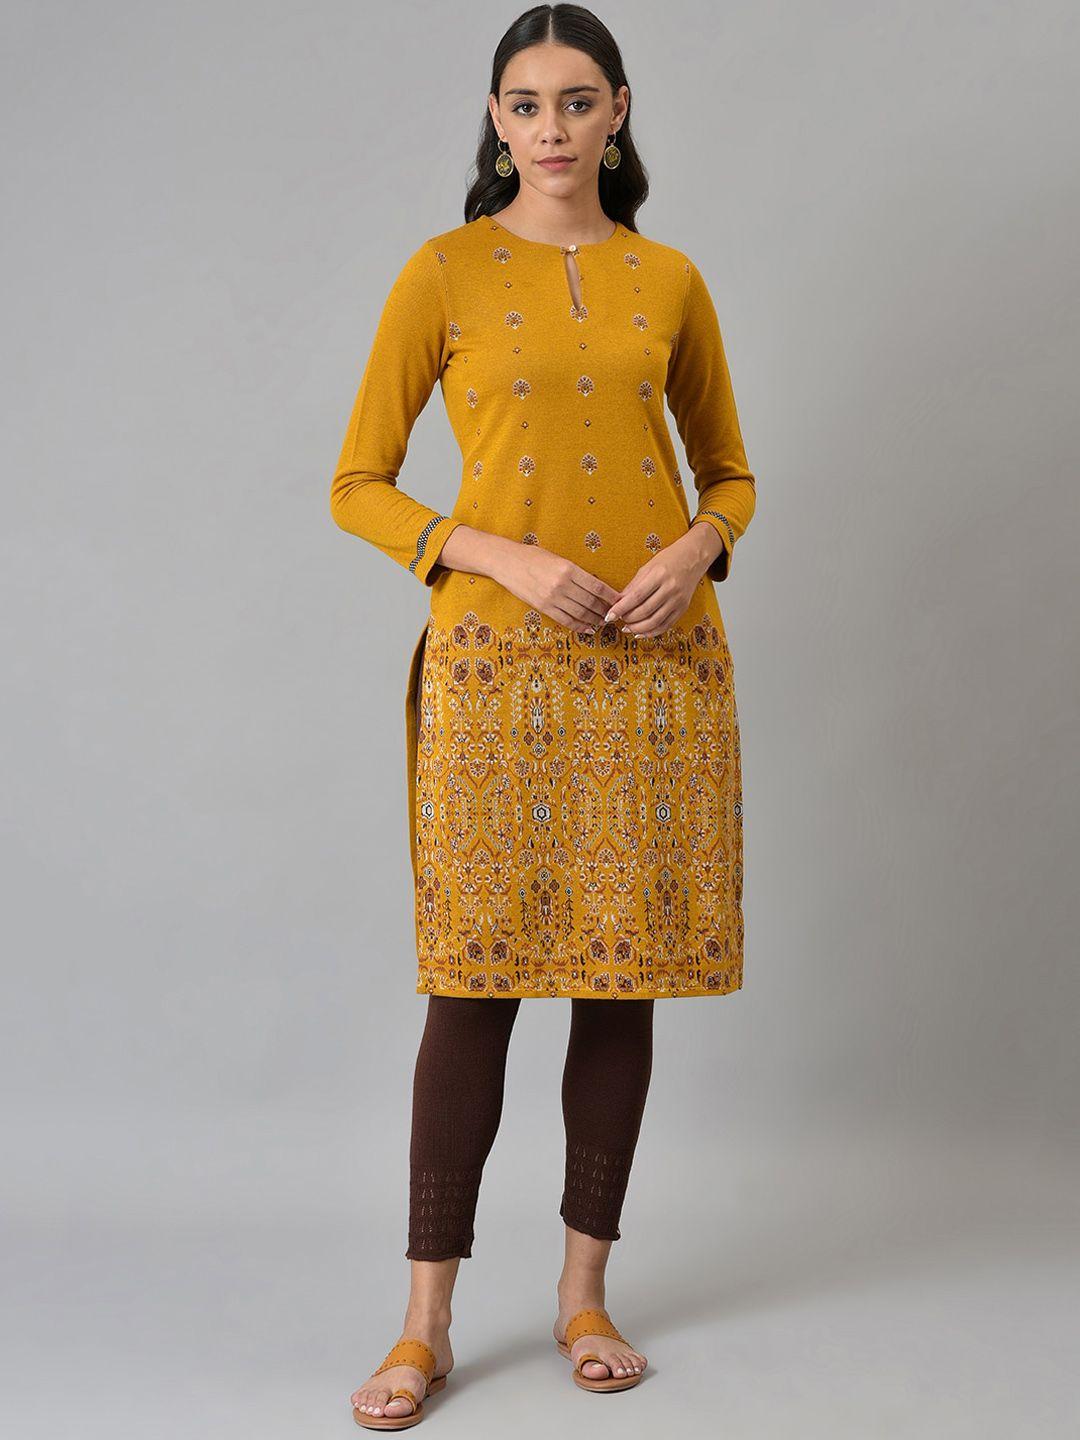 w-women-mustard-yellow-ethnic-motifs-printed-keyhole-neck-kurta